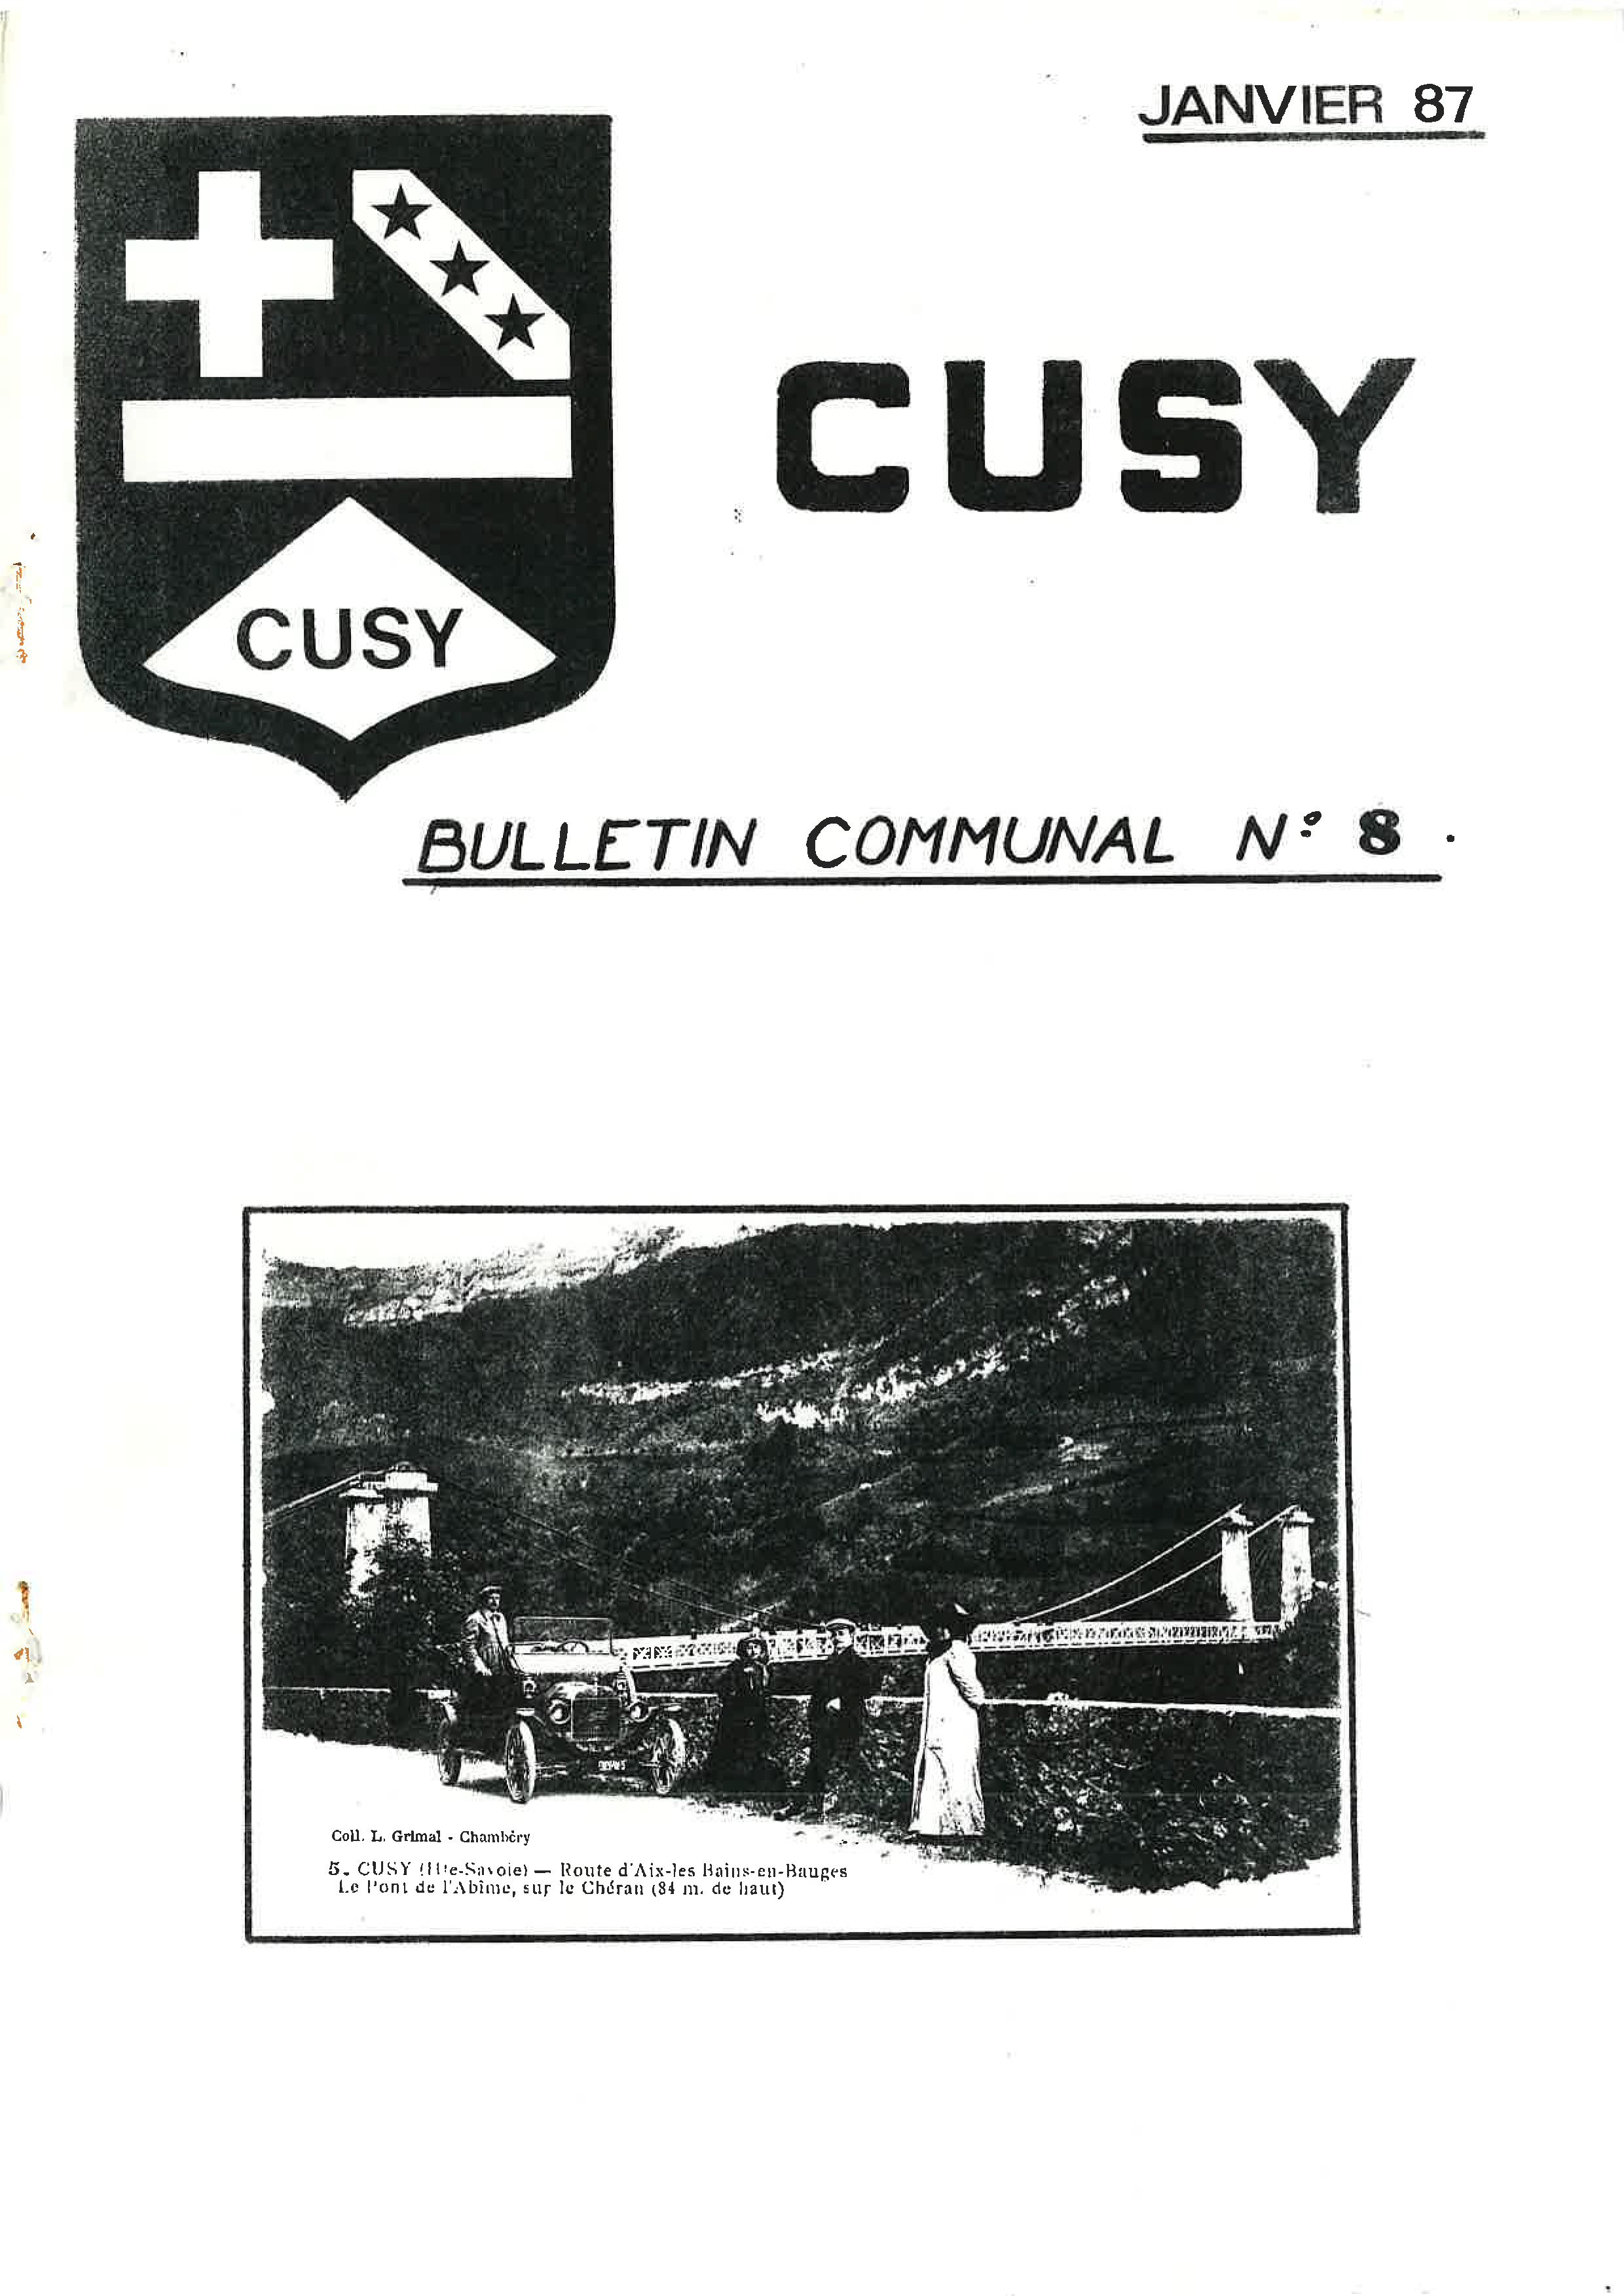 1987 01 Bulletin communal n°8_Page_01.jpg